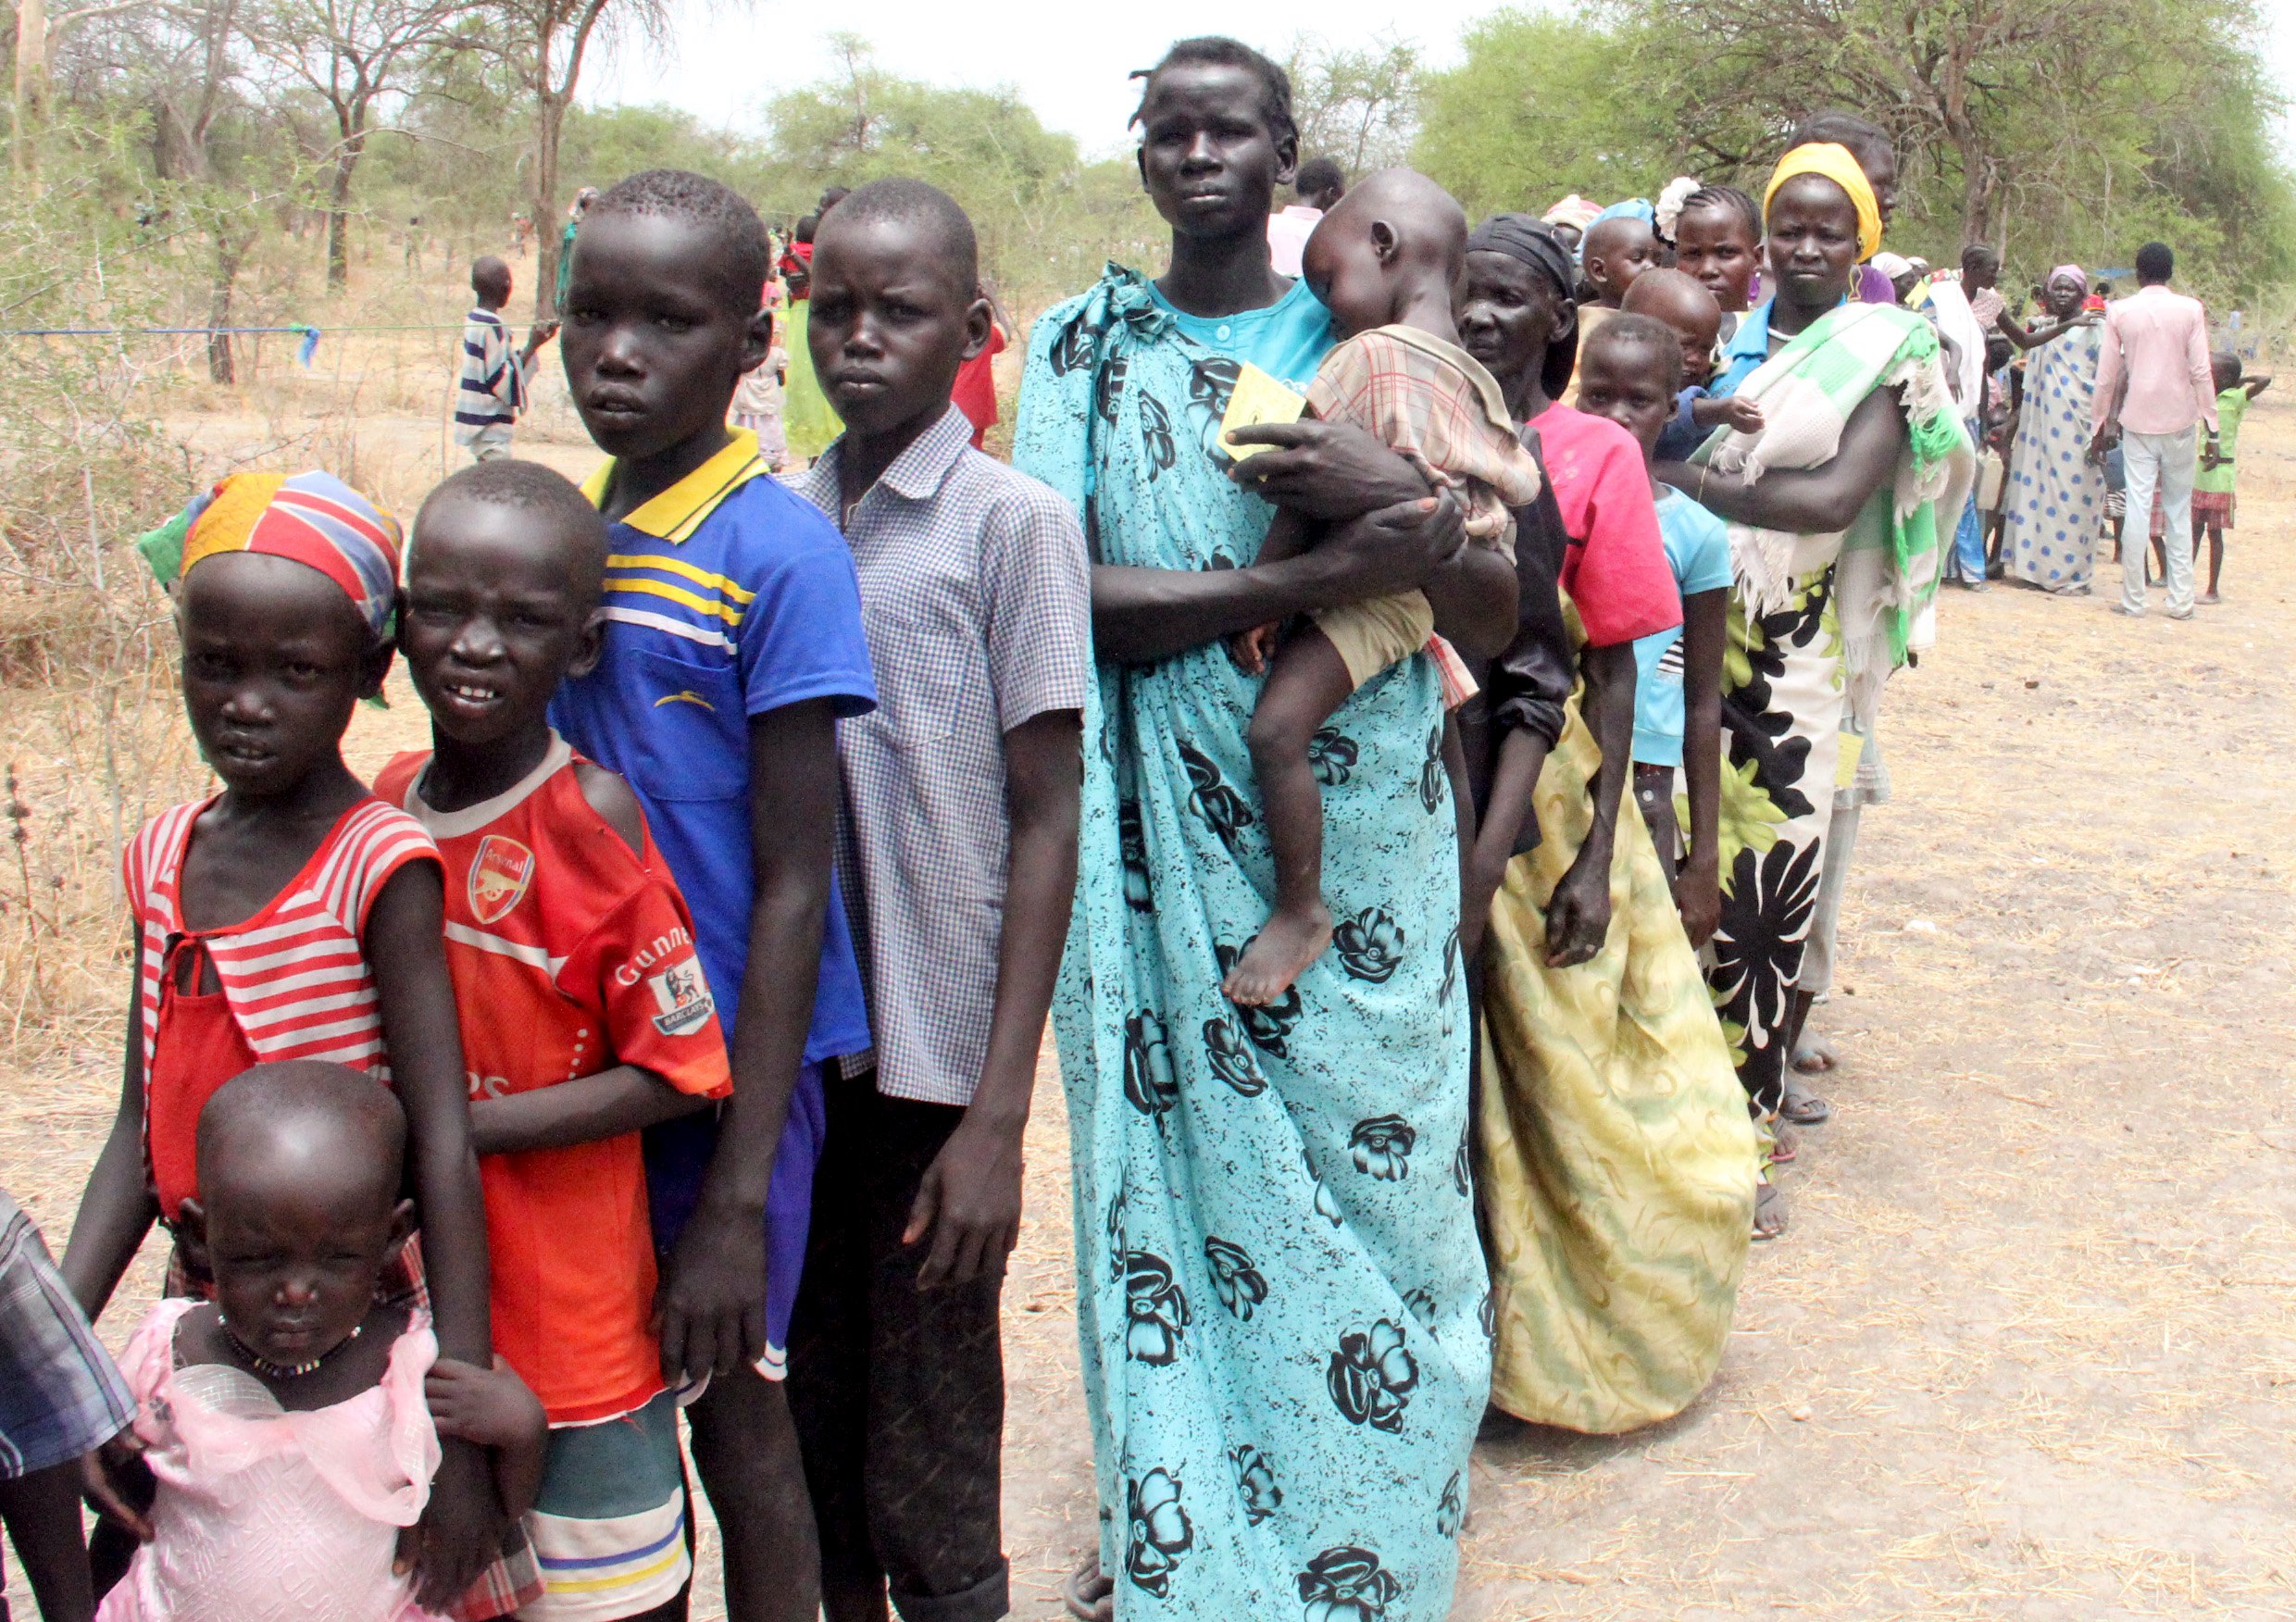 Νότιο Σουδάν: Χωρίς βοήθεια 300.000 άμαχοι μετά την αποχώρηση του ΟΗΕ